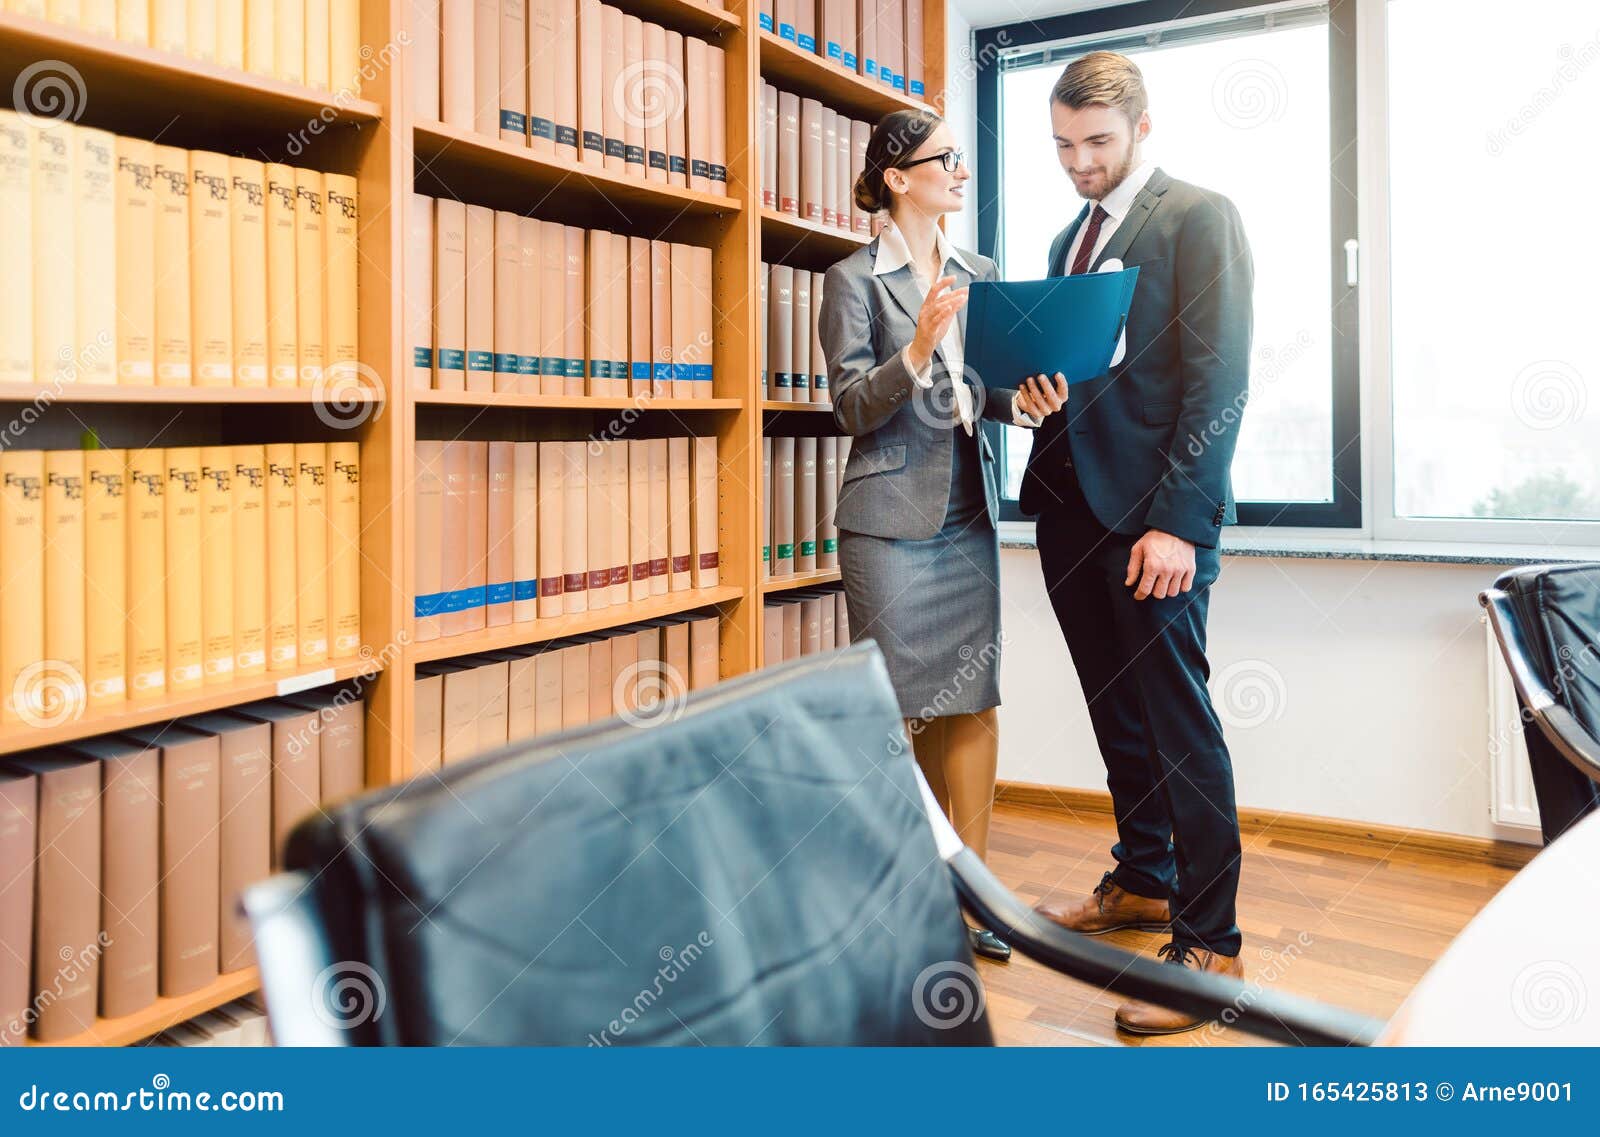 advogados-mesa-primeirodia-SSDH.jpg